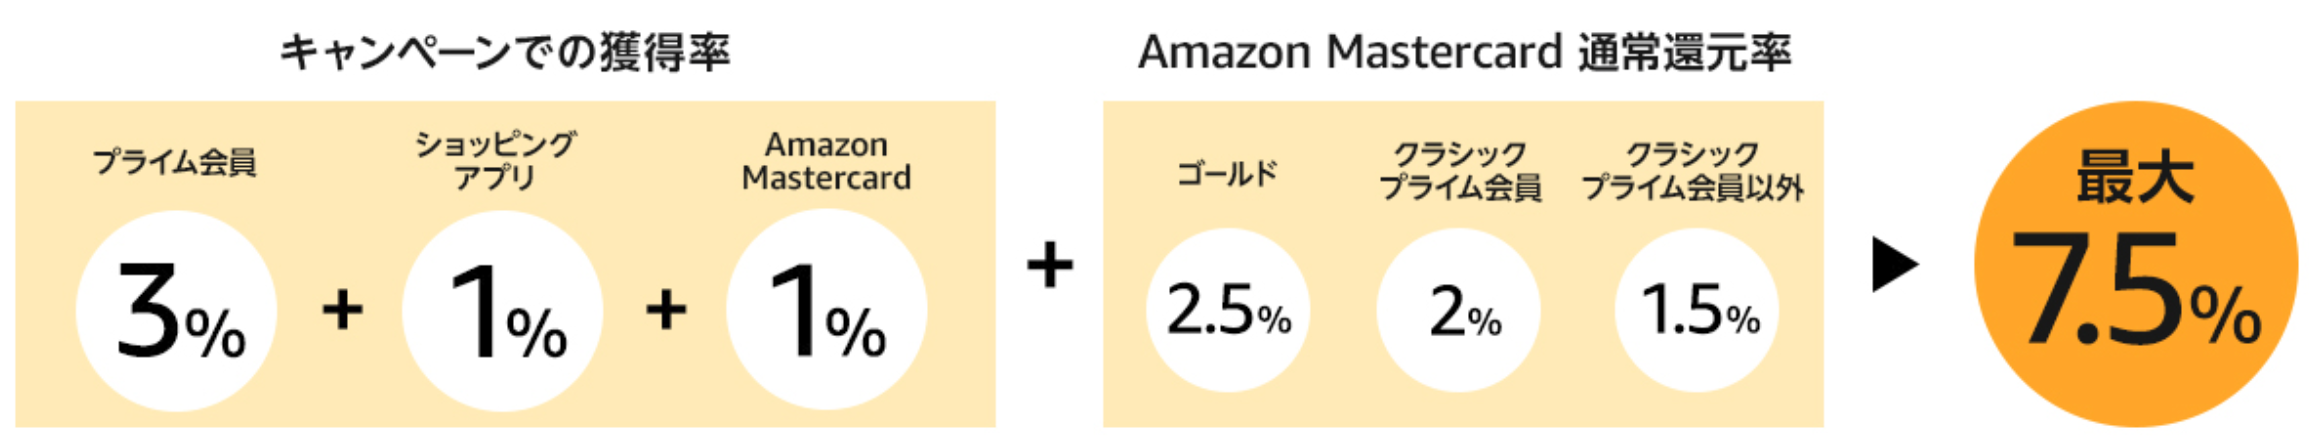 Amazonポイントアップキャンペーンで最大7 5 5 000ポイント還元 寝ながら投資